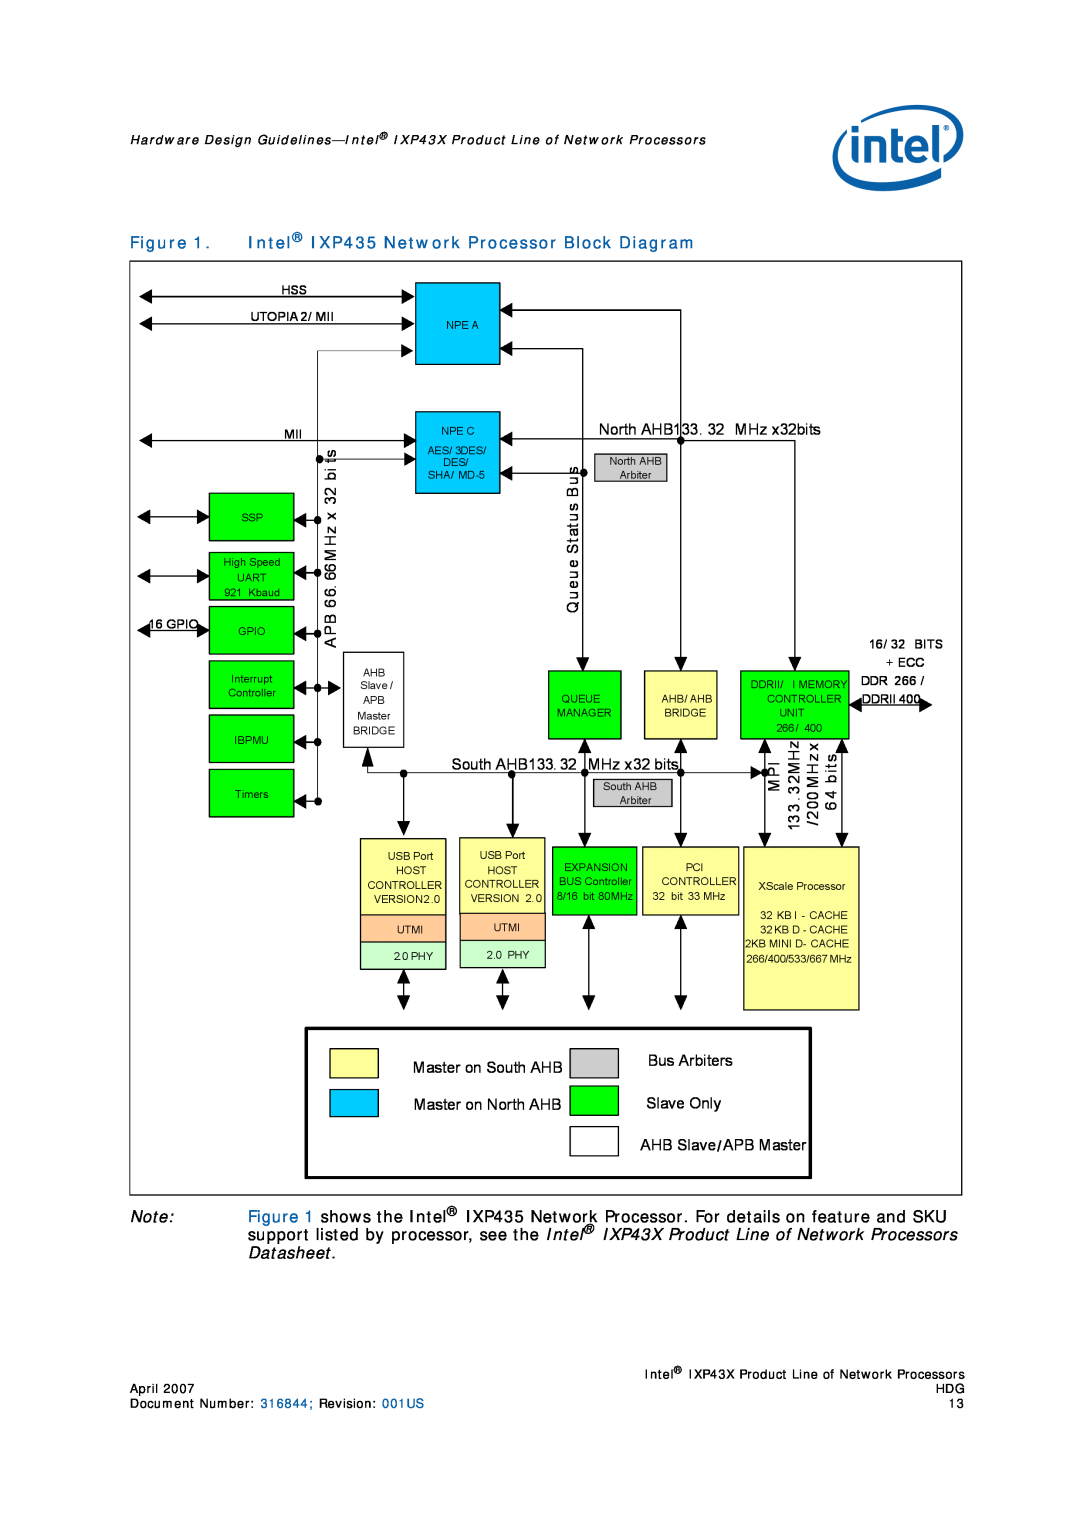 Intel IXP43X manual Intel IXP435 Network Processor Block Diagram 